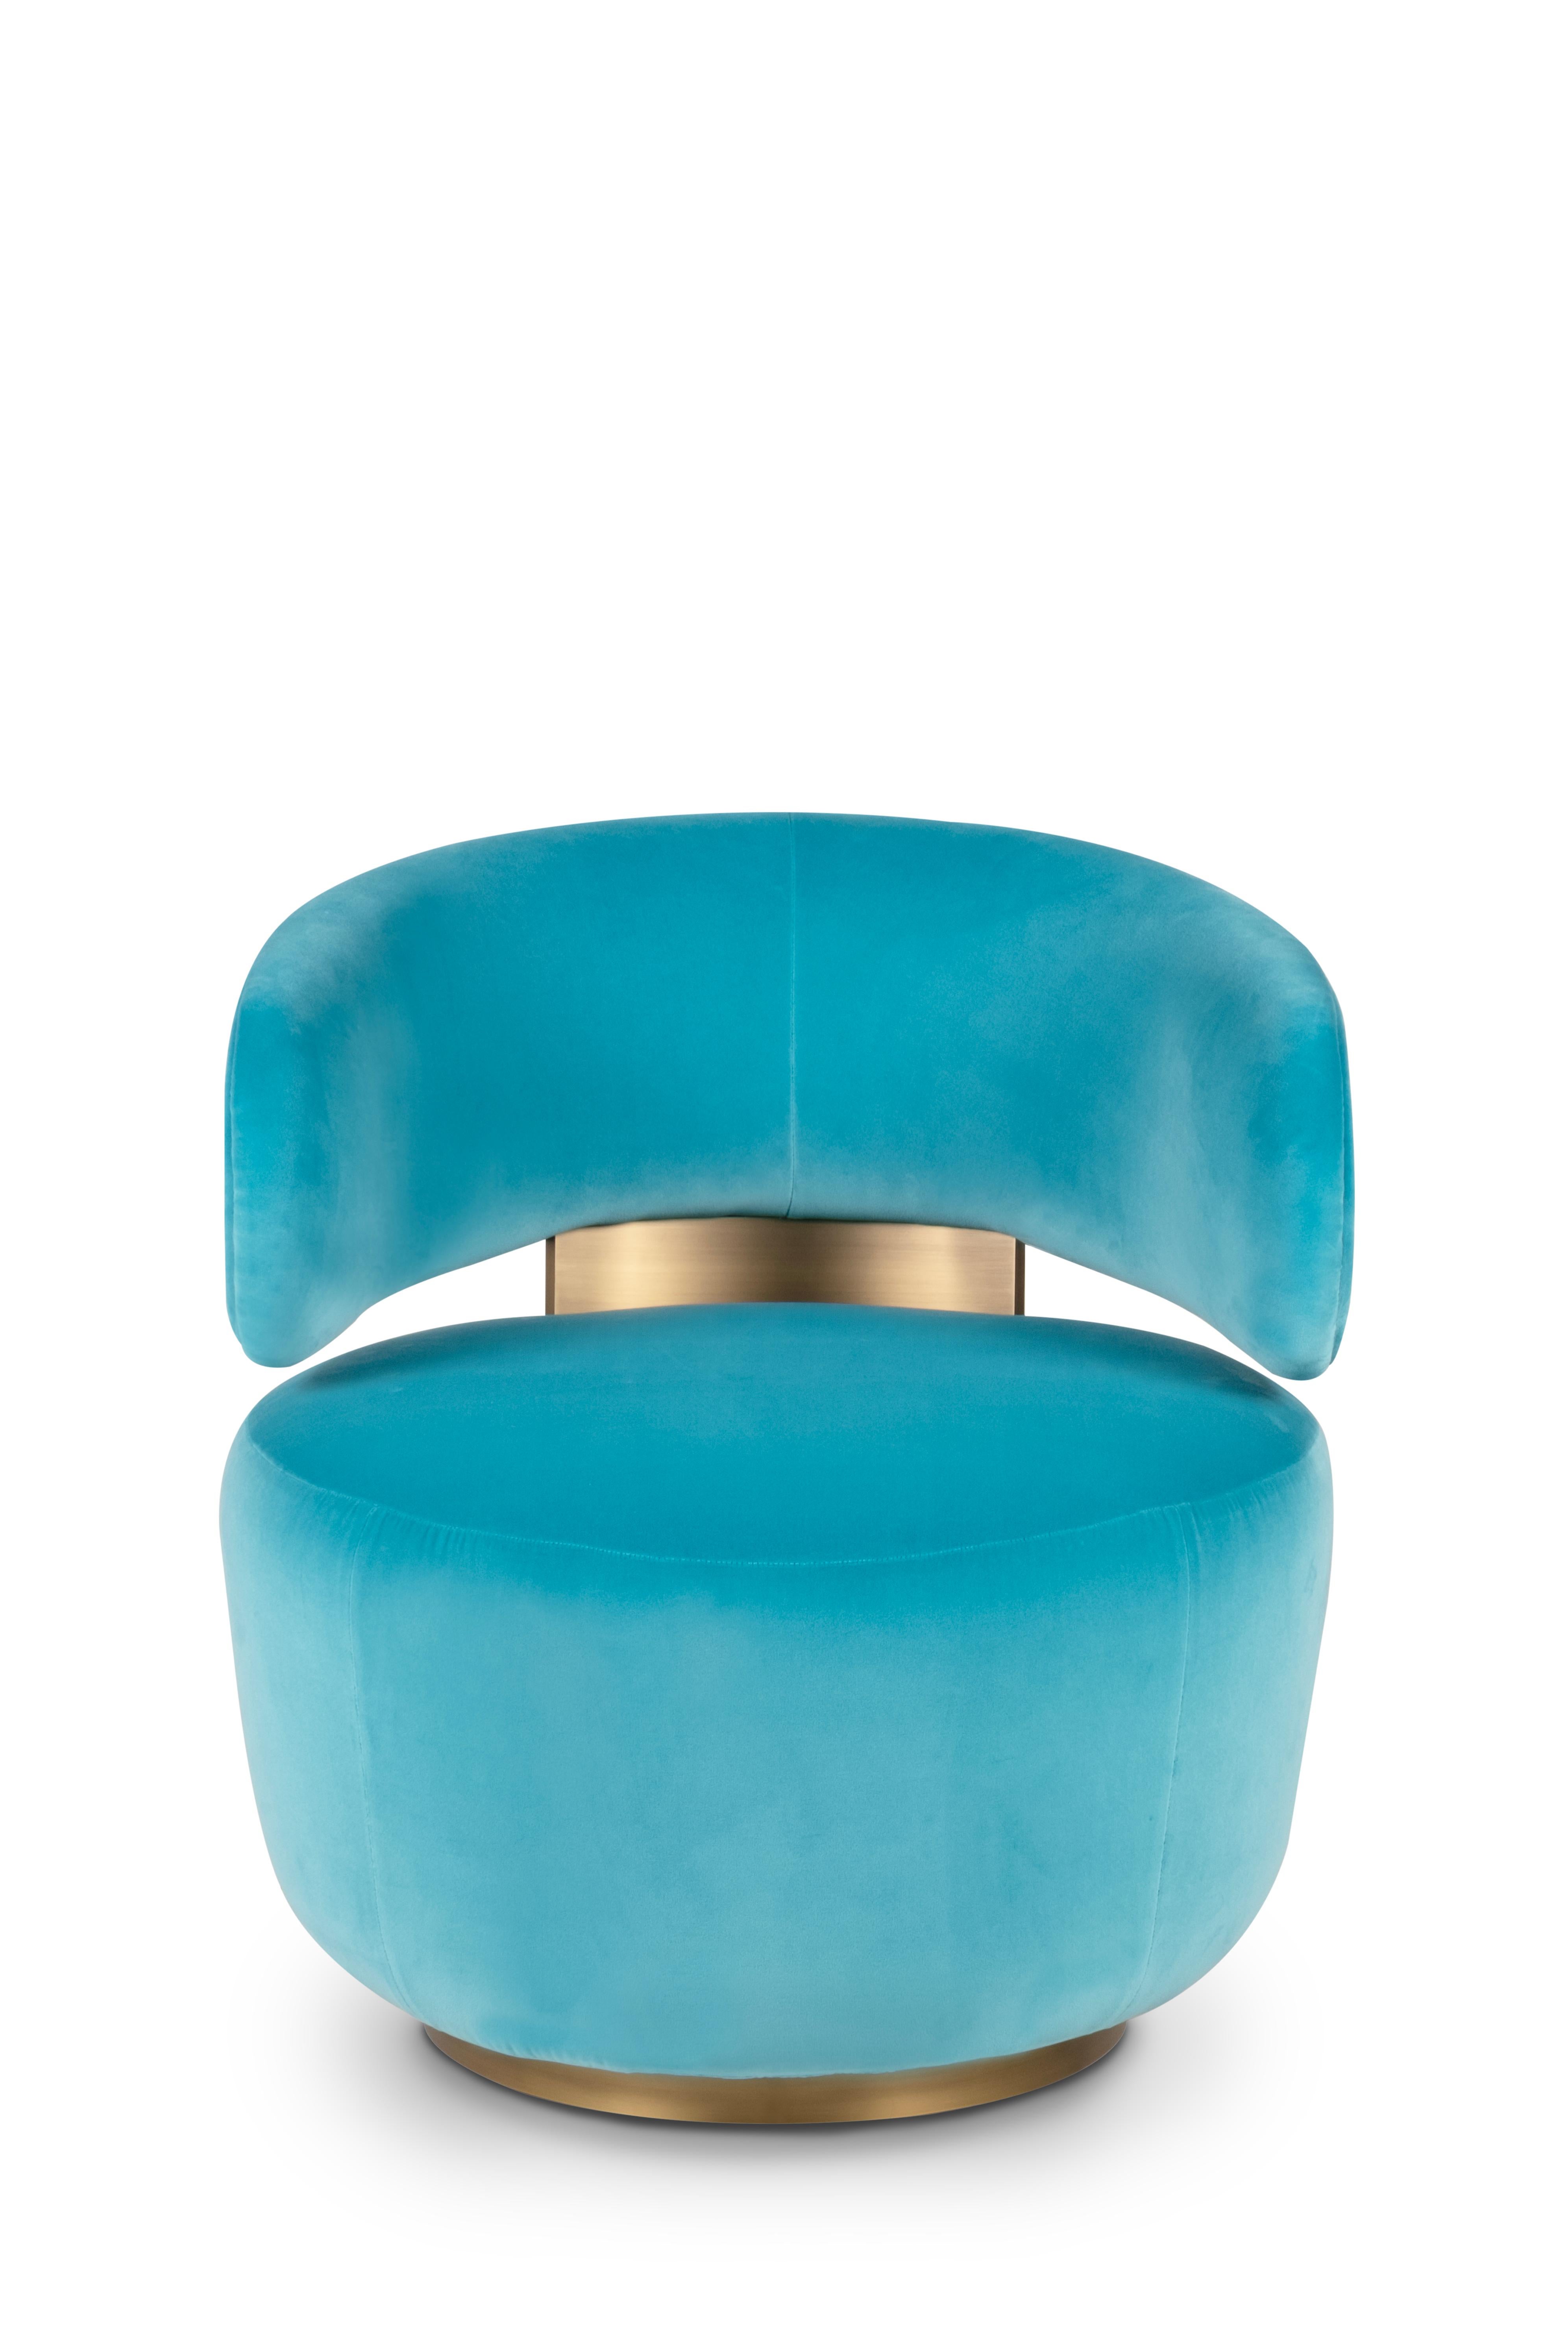 Caju Swivel Lounge Chair, Contemporary Collection, handgefertigt in Portugal - Europa von Greenapple.

Der Loungesessel Caju ist ein trendiges Möbelstück, das die organische Form einer Cashew verkörpert. Das Design des mit türkisfarbenem Samt